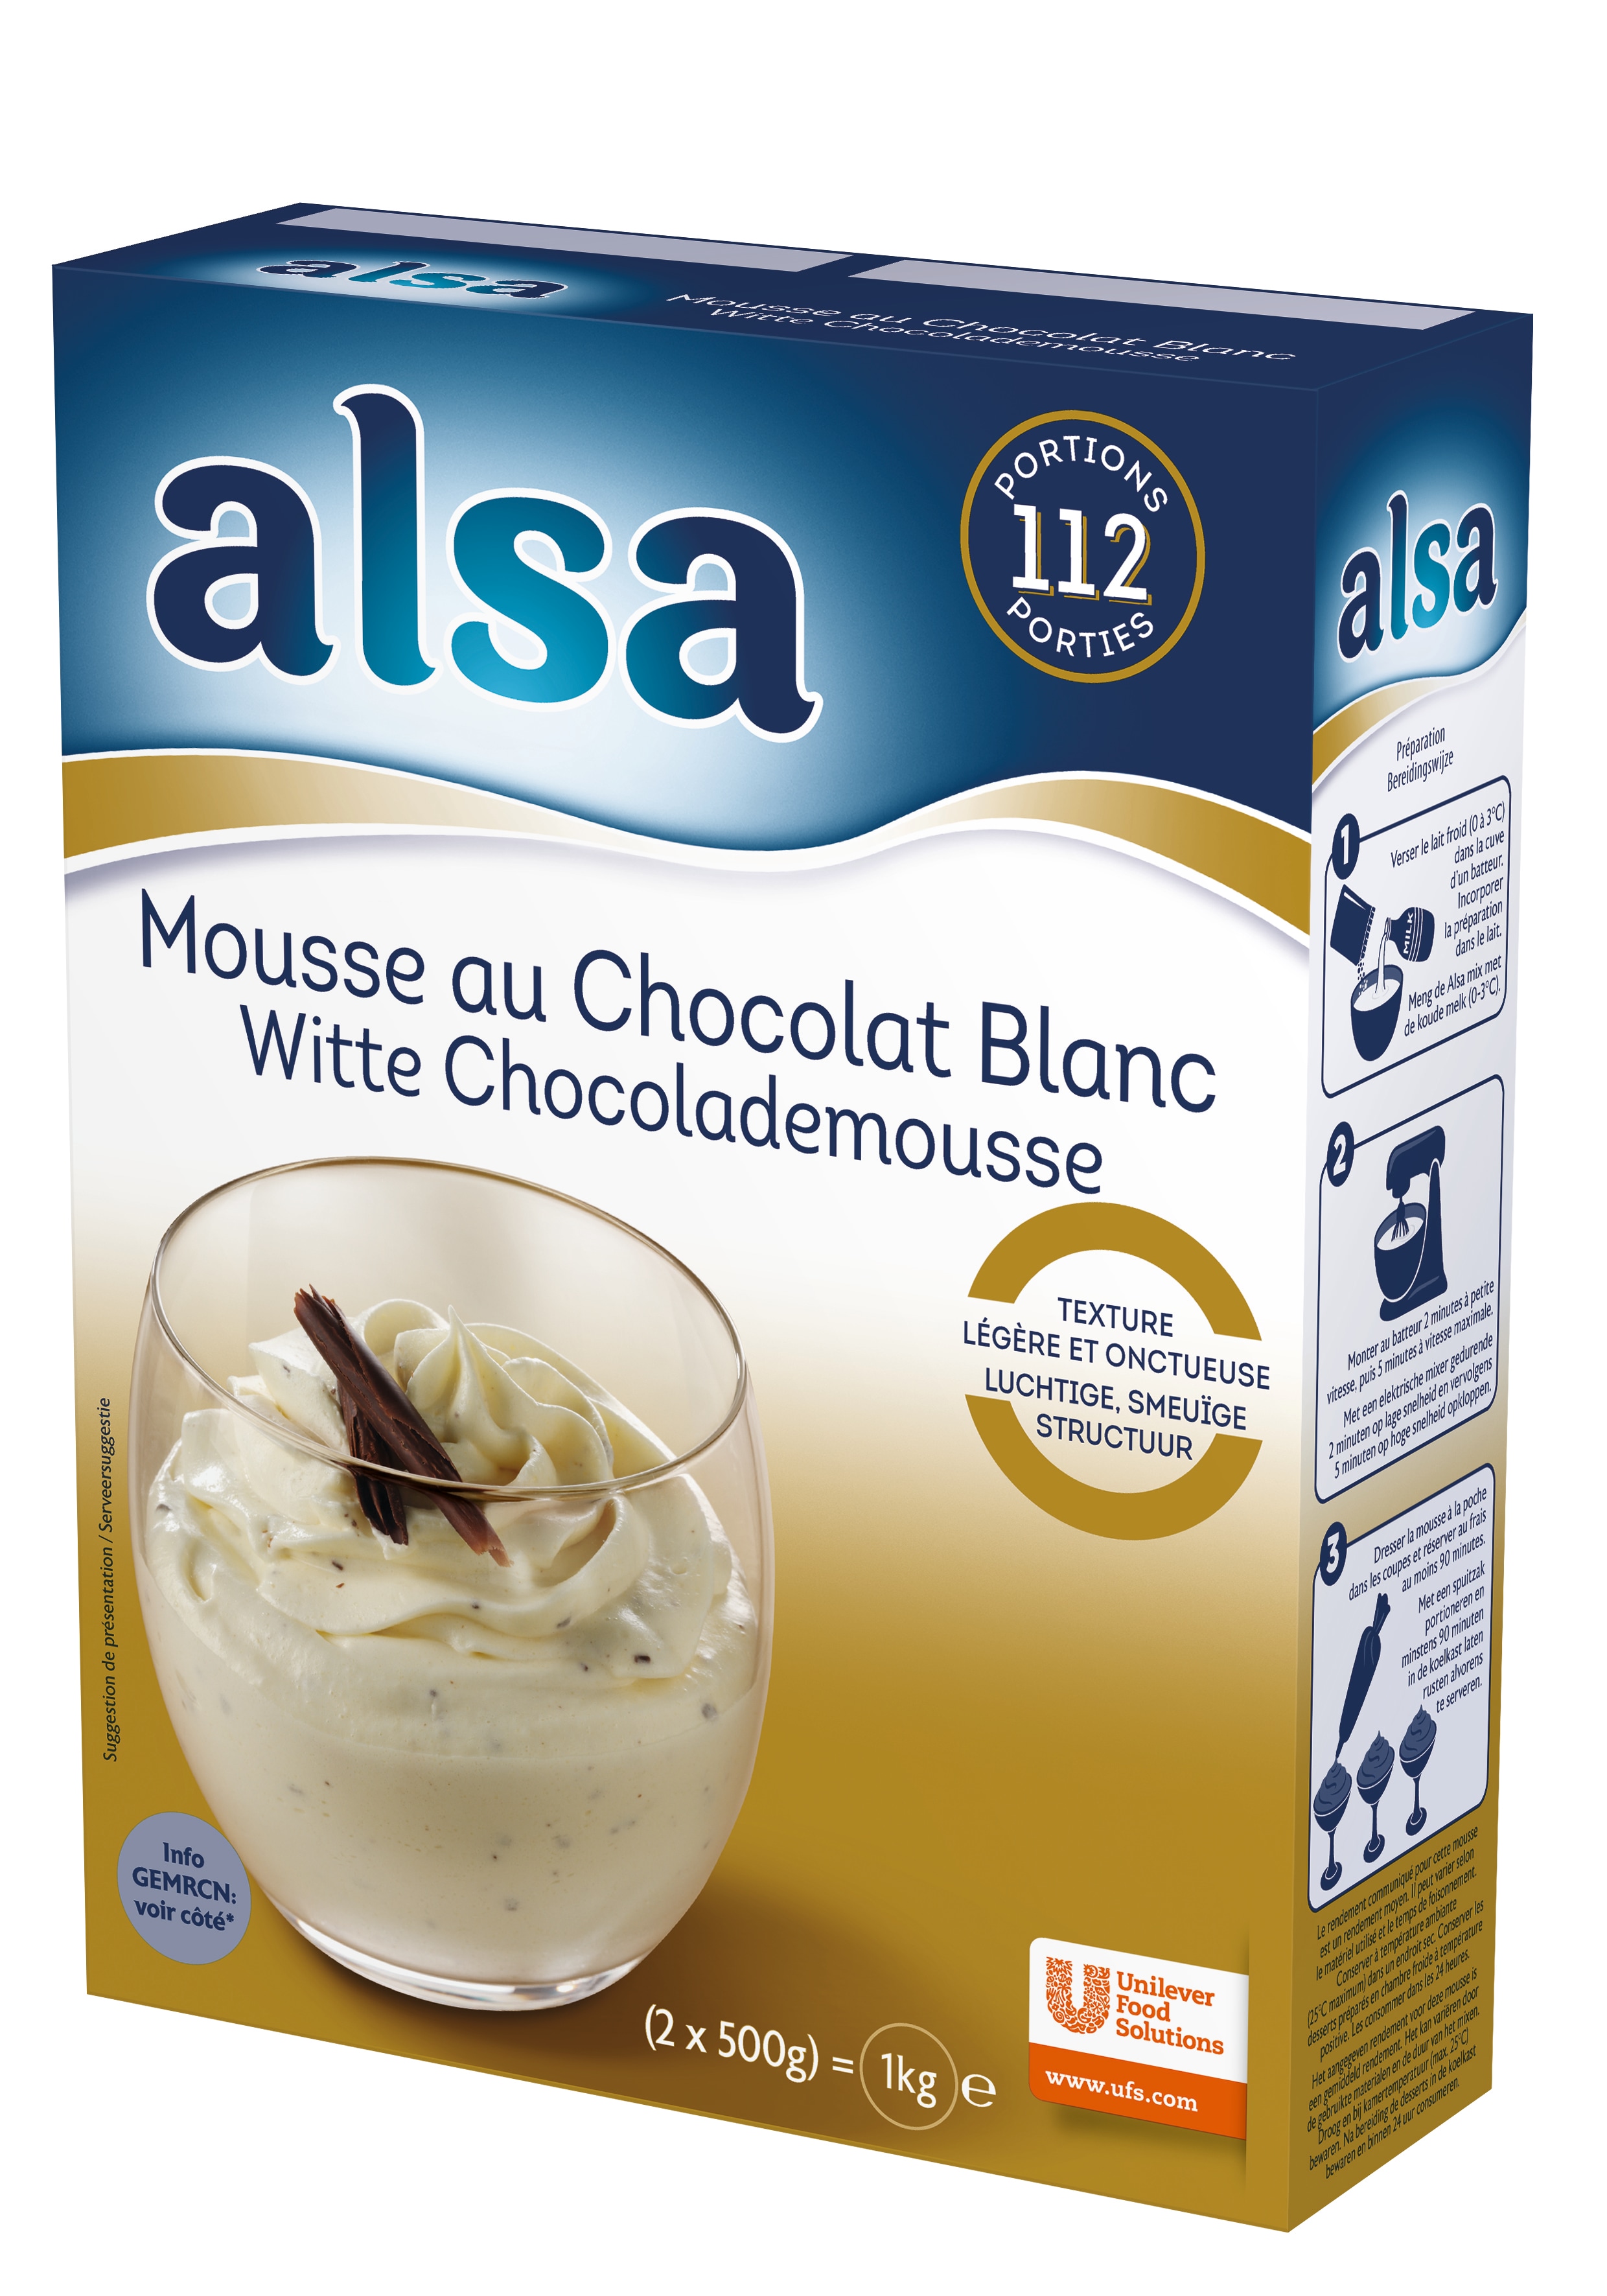 Alsa Mousse au Chocolat Blanc 1kg 112 portions - Faites de chaque jour un régal avec les mousses Alsa !